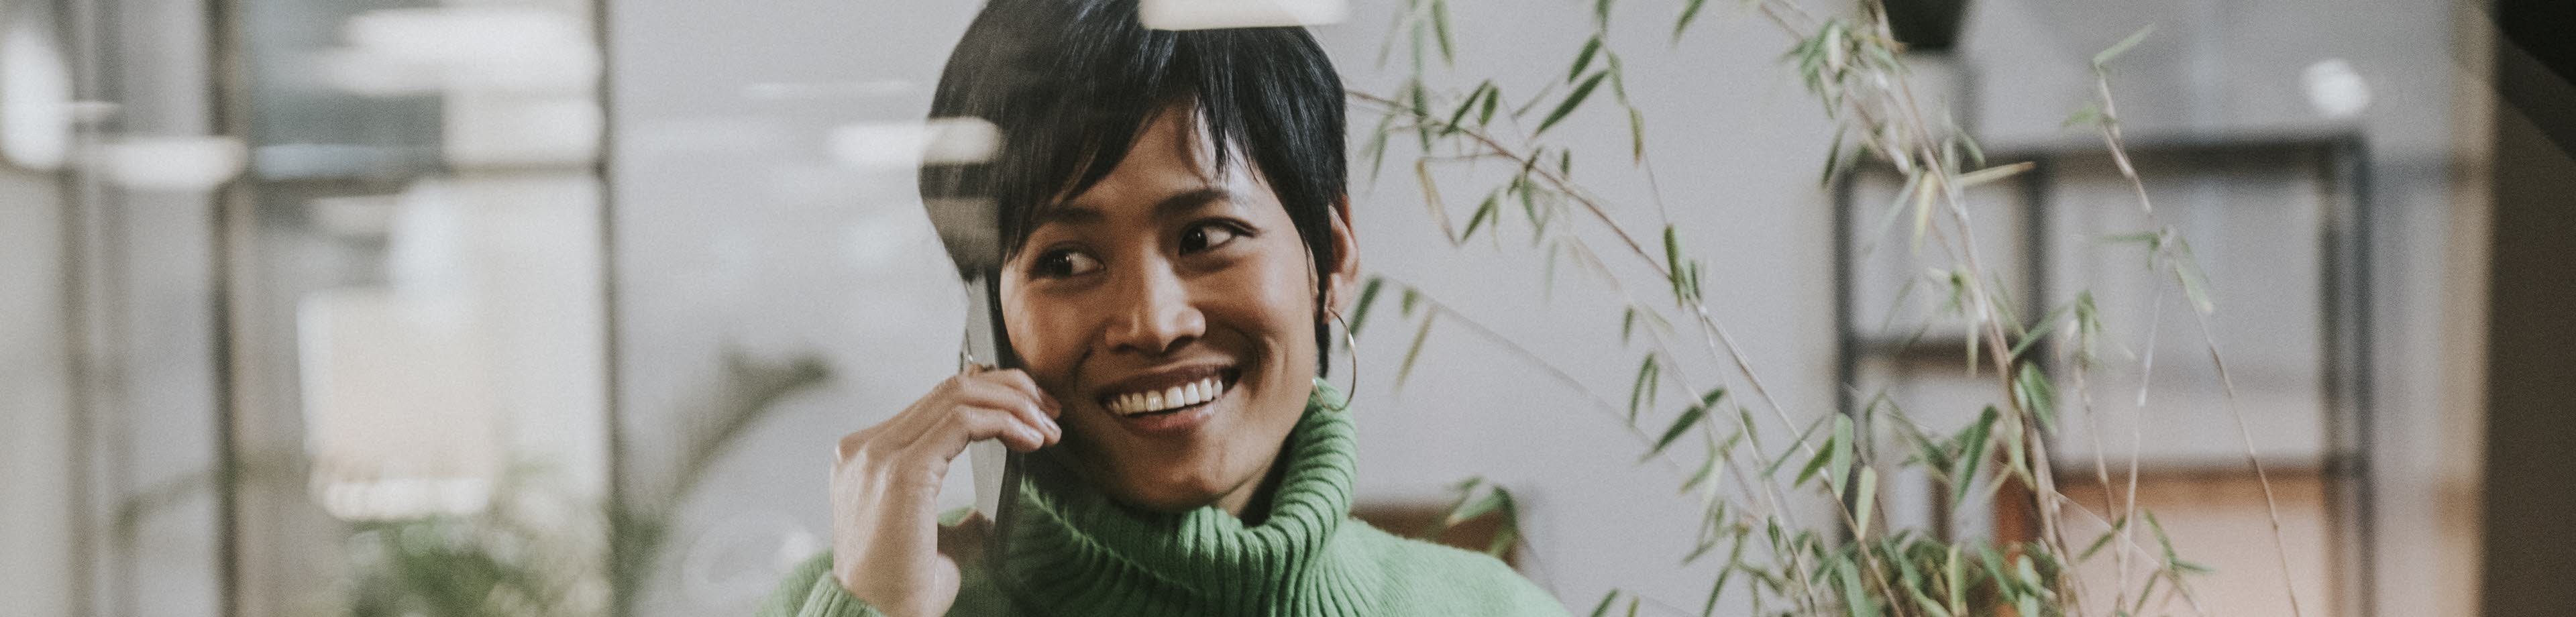 Een vrouw met een groene trui glimlacht en houdt een mobiele telefoon tegen haar oor.